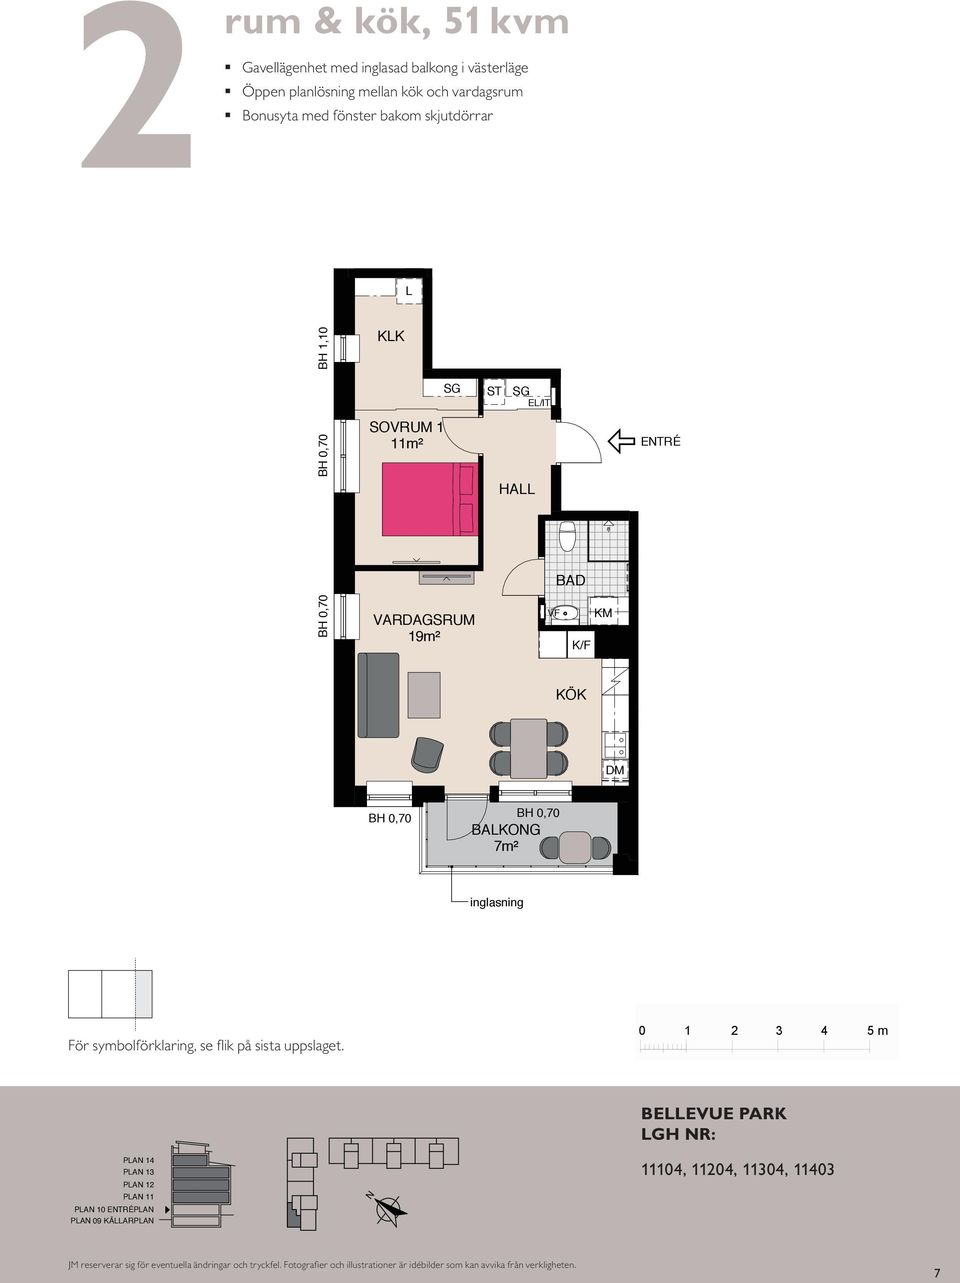 sovrummet rum och kök, 46 m² Gavellägenhet med inglasad balkong Kompakt lägenhet med öppna rumssamband Sovrum med plats för två Balkong mot gård BH,0 BH,0 KK KK BAKOG 8 BH 0,55 m SOVRUM SOVRUM m² m²